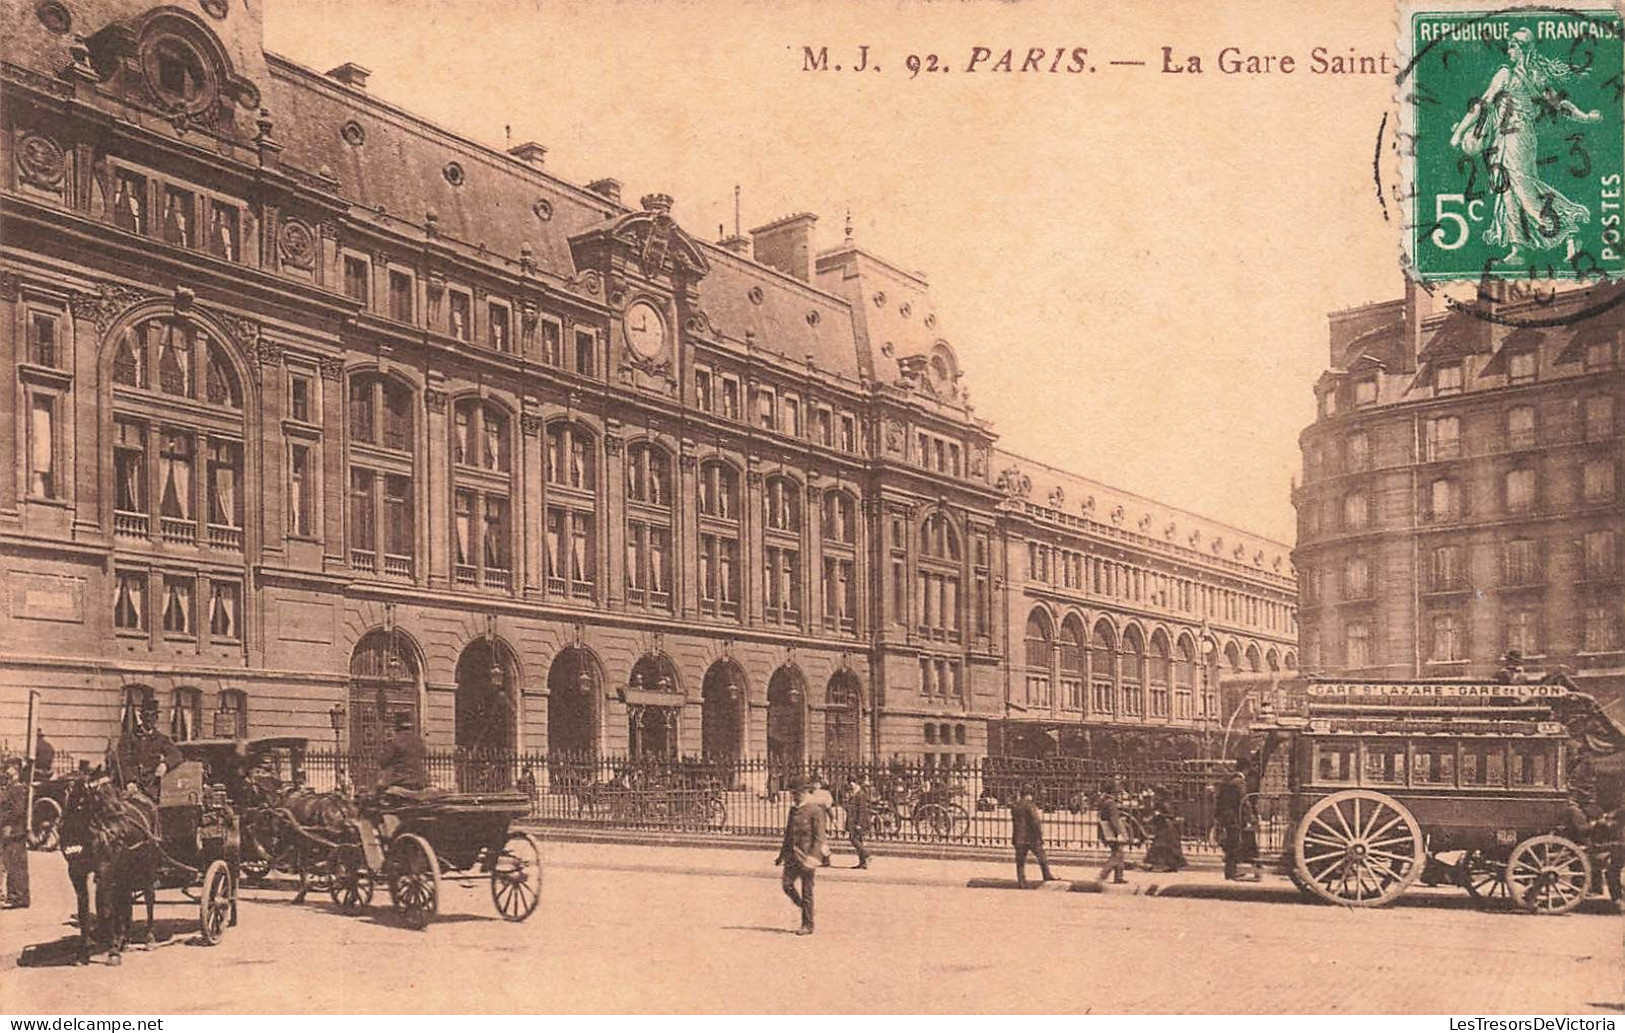 FRANCE - Paris - La Gare Saint Lazare - Carte Postale Ancienne - Pariser Métro, Bahnhöfe